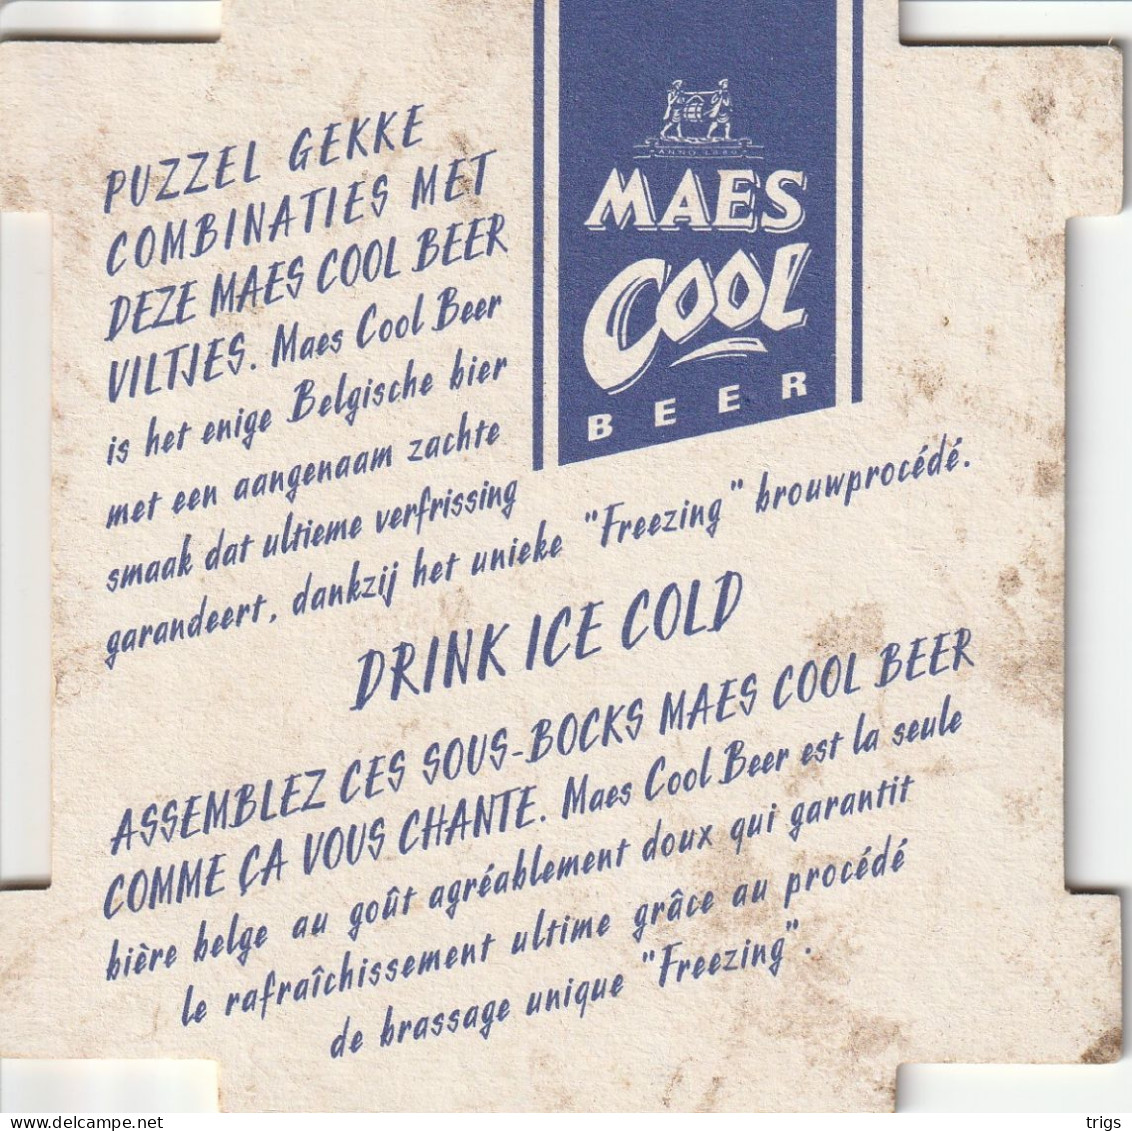 Maes Cool Beer - Bierdeckel